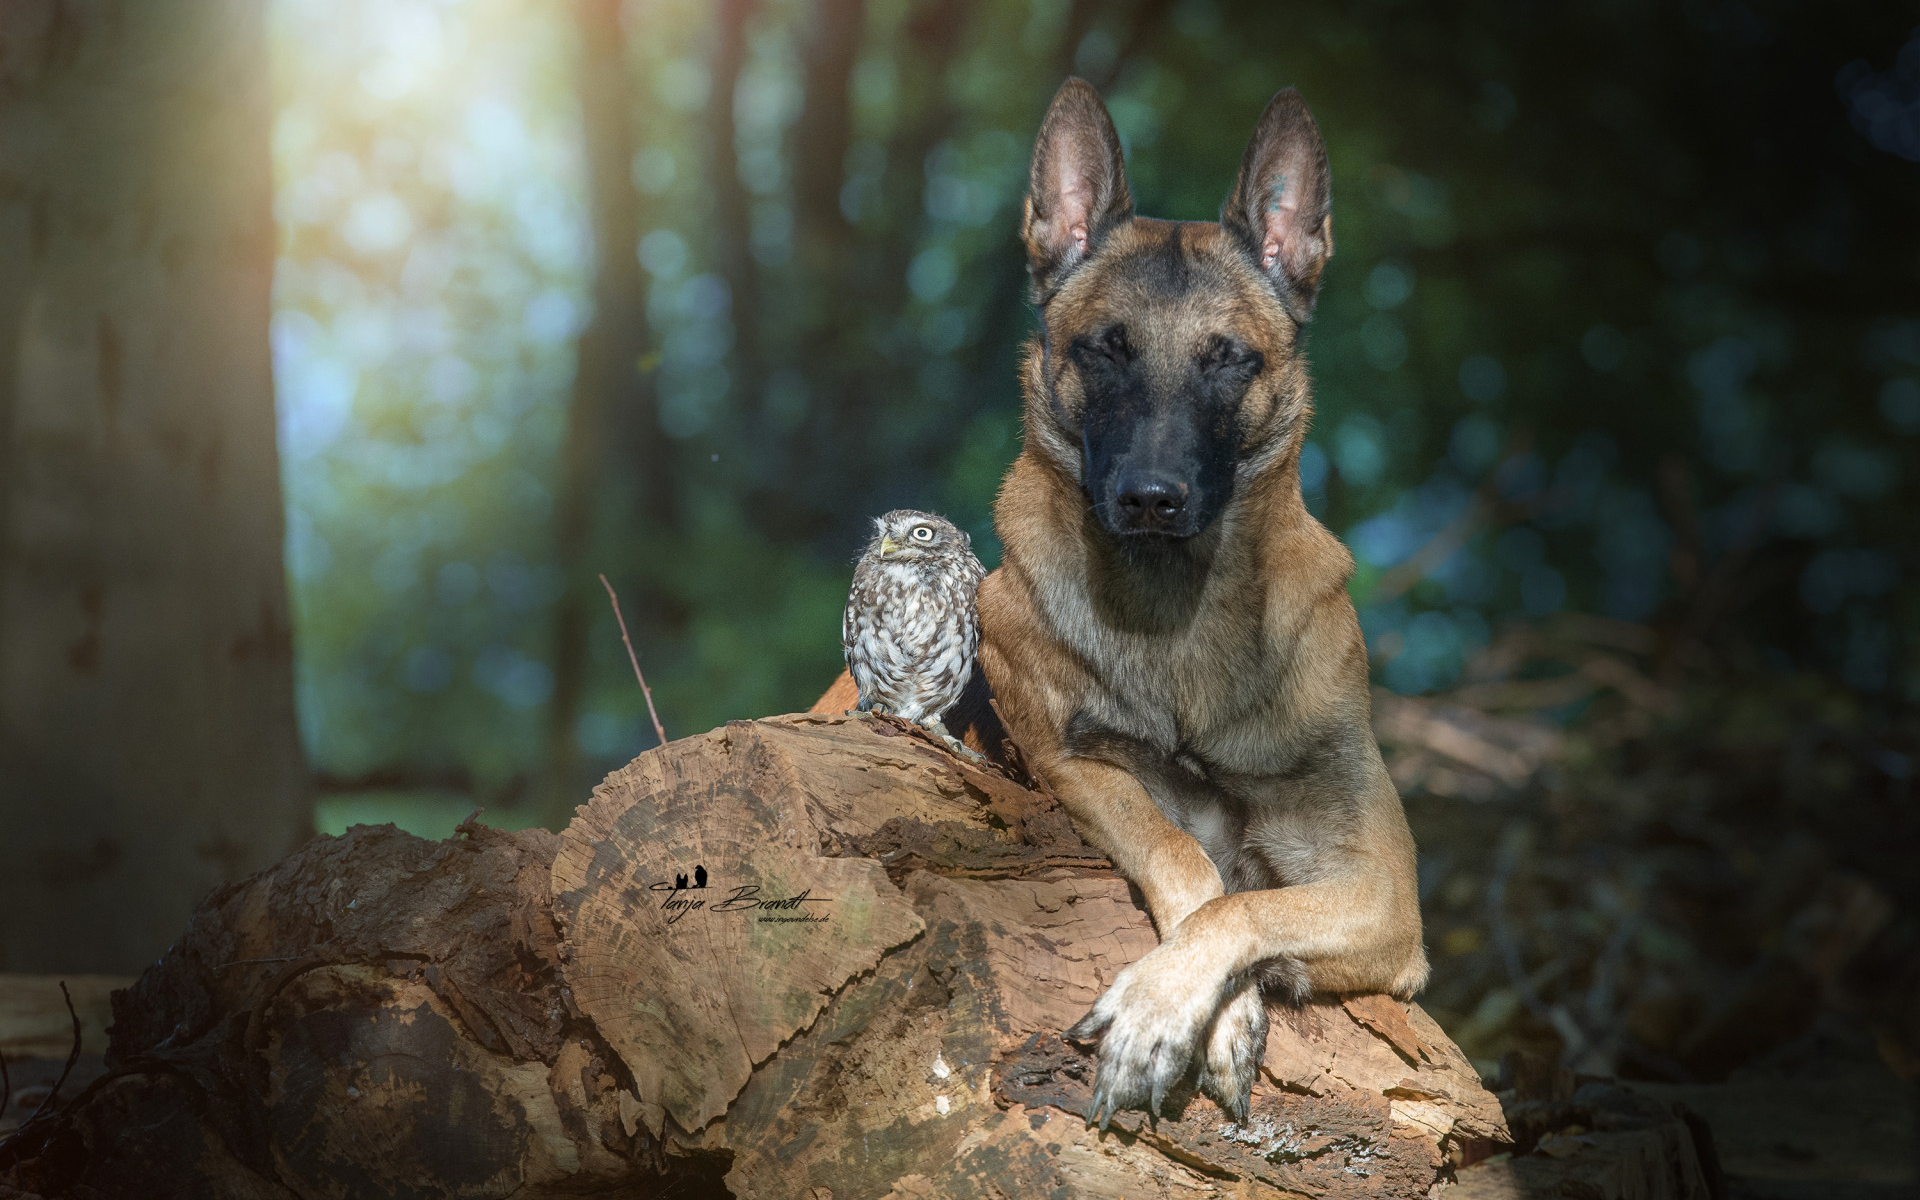 Free download wallpaper Dogs, Owl, Dog, Animal, Belgian Malinois on your PC desktop